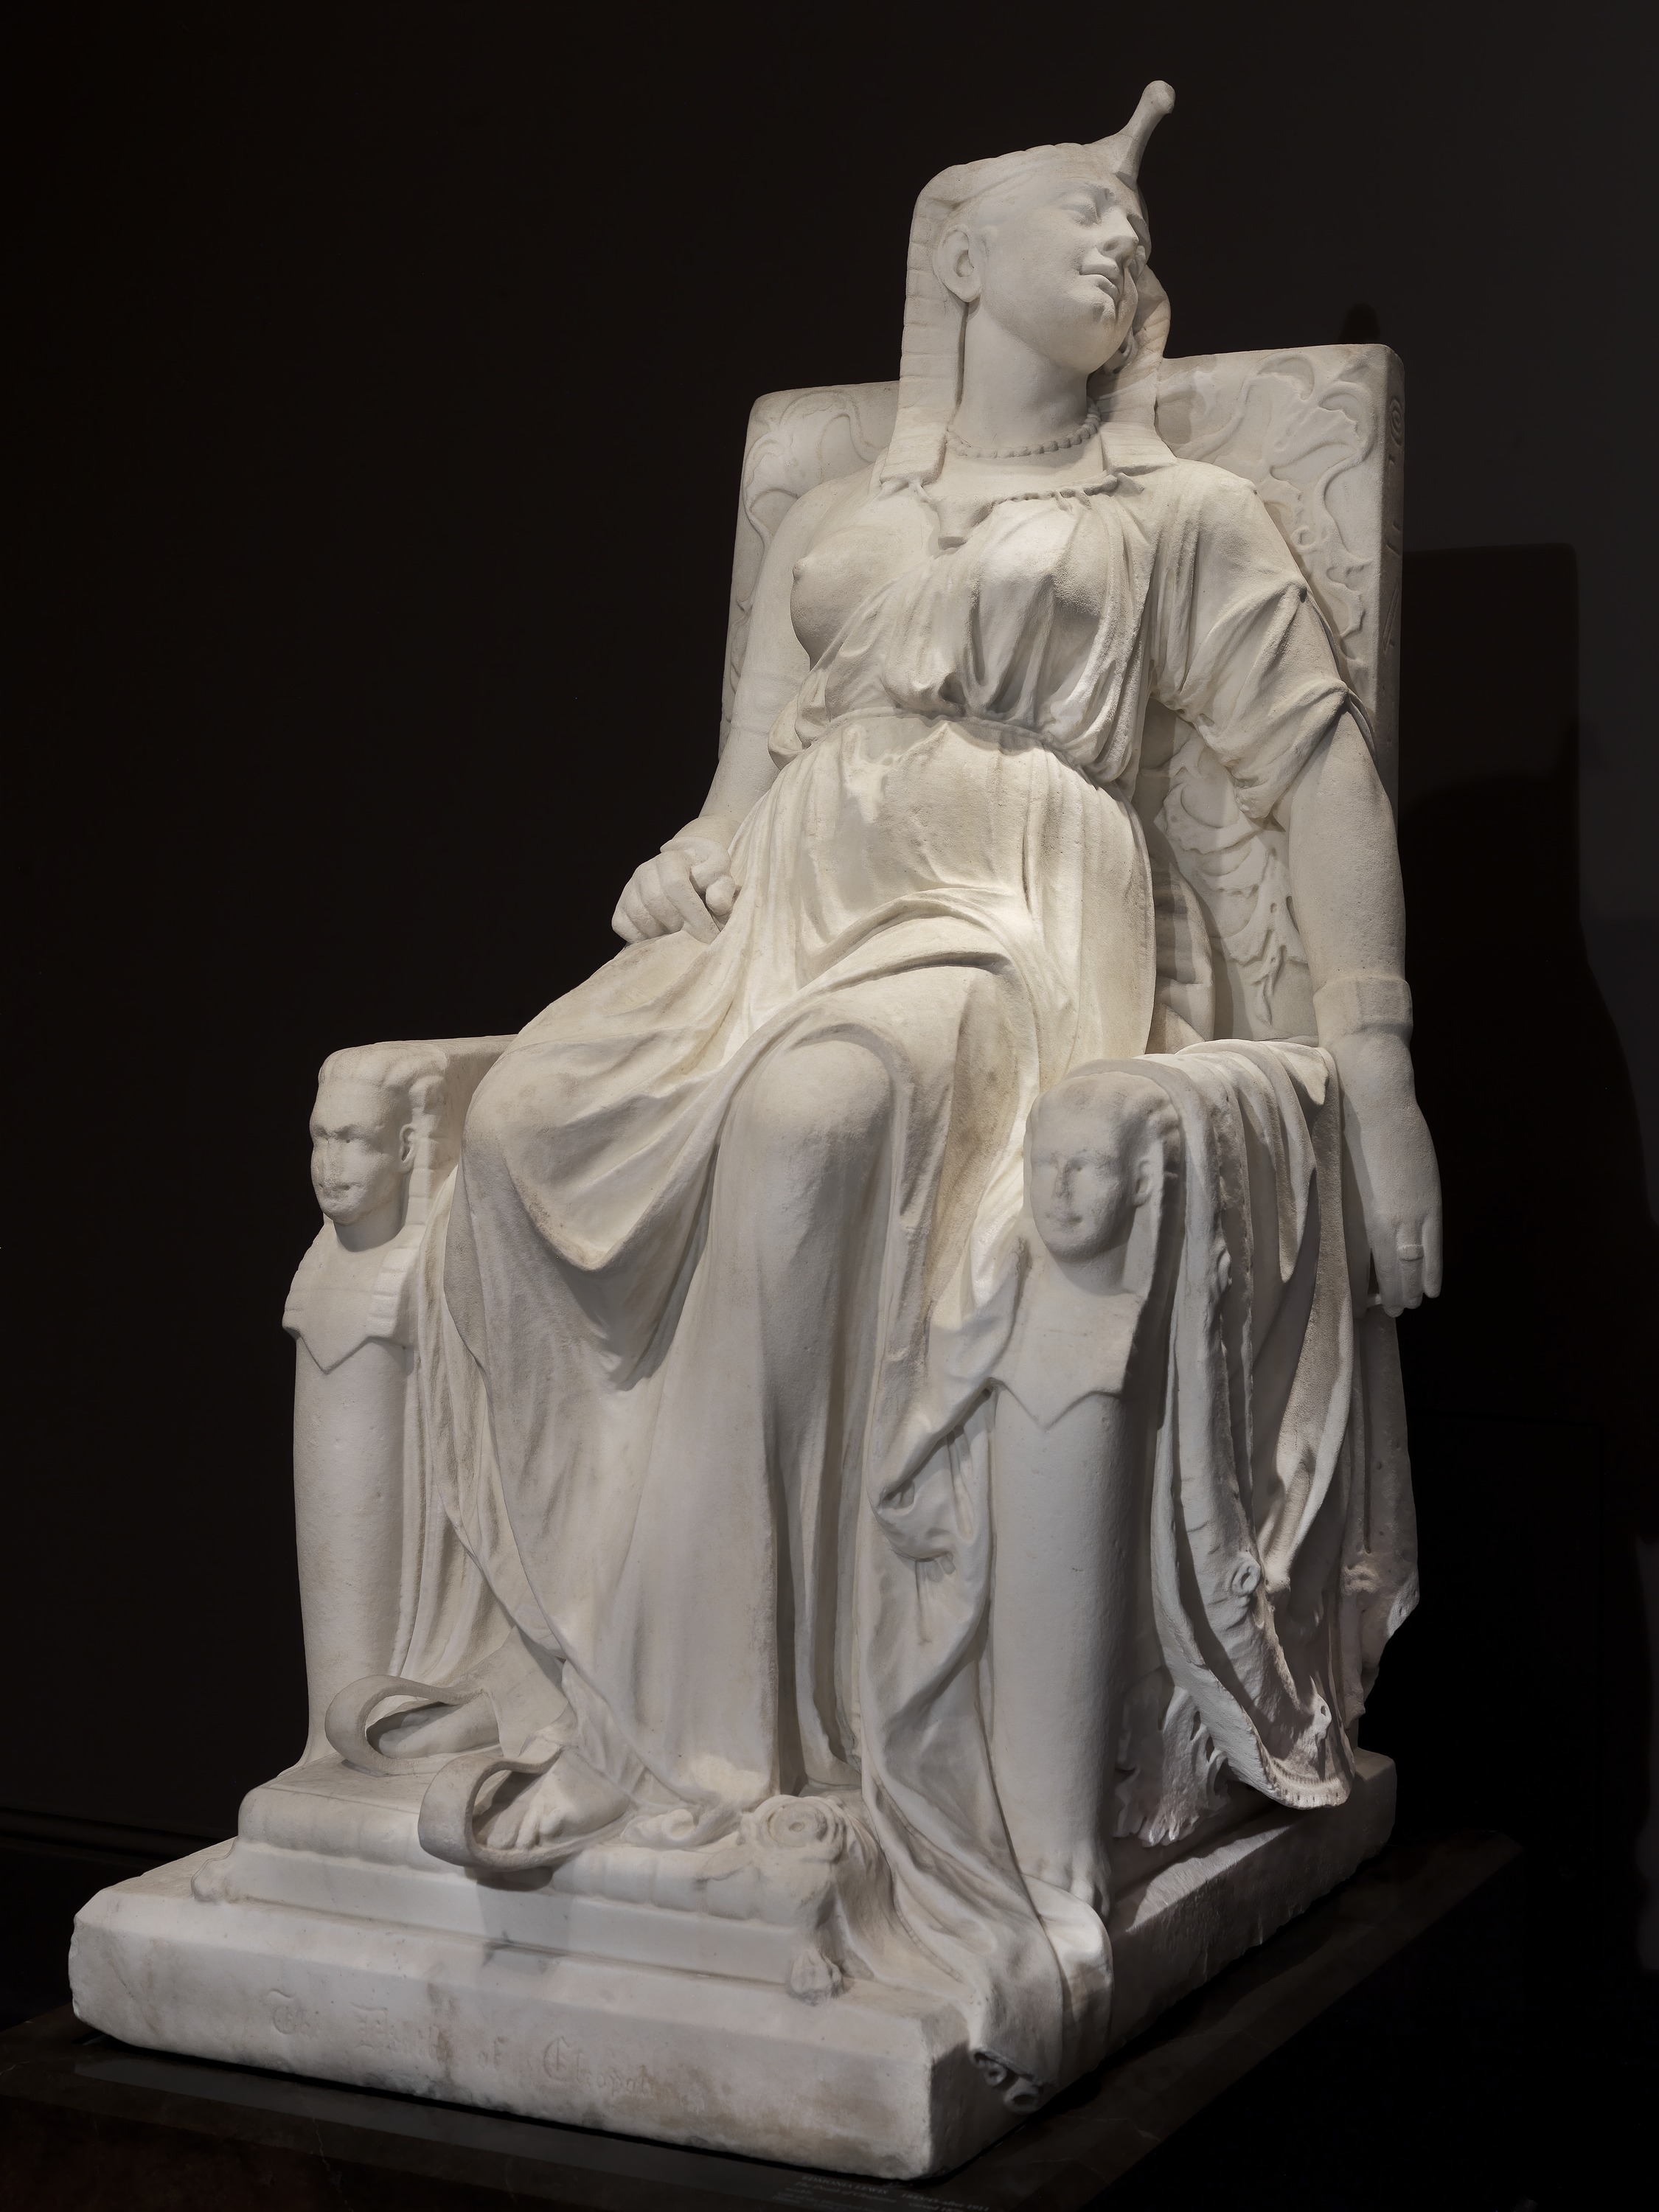 클레오파트라의 죽음(The Death of Cleopatra) by Edmonia Lewis - 1876 - 160.0 x 79.4 x 116.8 cm 